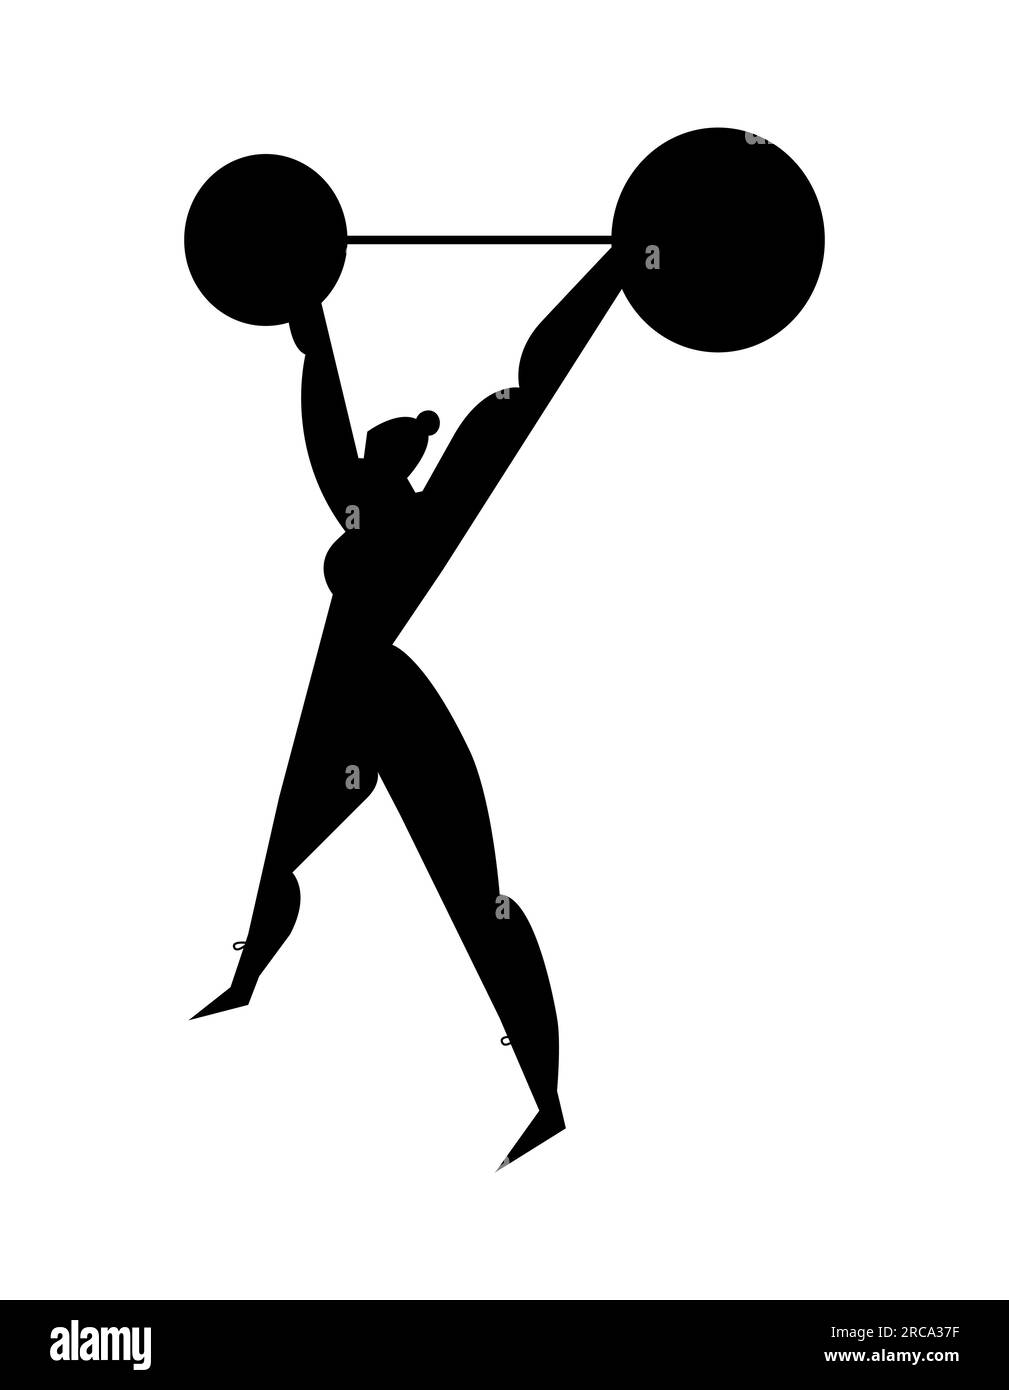 Silueta negra de una mujer atlética levantando una barra. Entrenamiento de gimnasio con barra deportiva, levantamiento de pesas y culturismo, estilo de vida saludable Ilustración del Vector